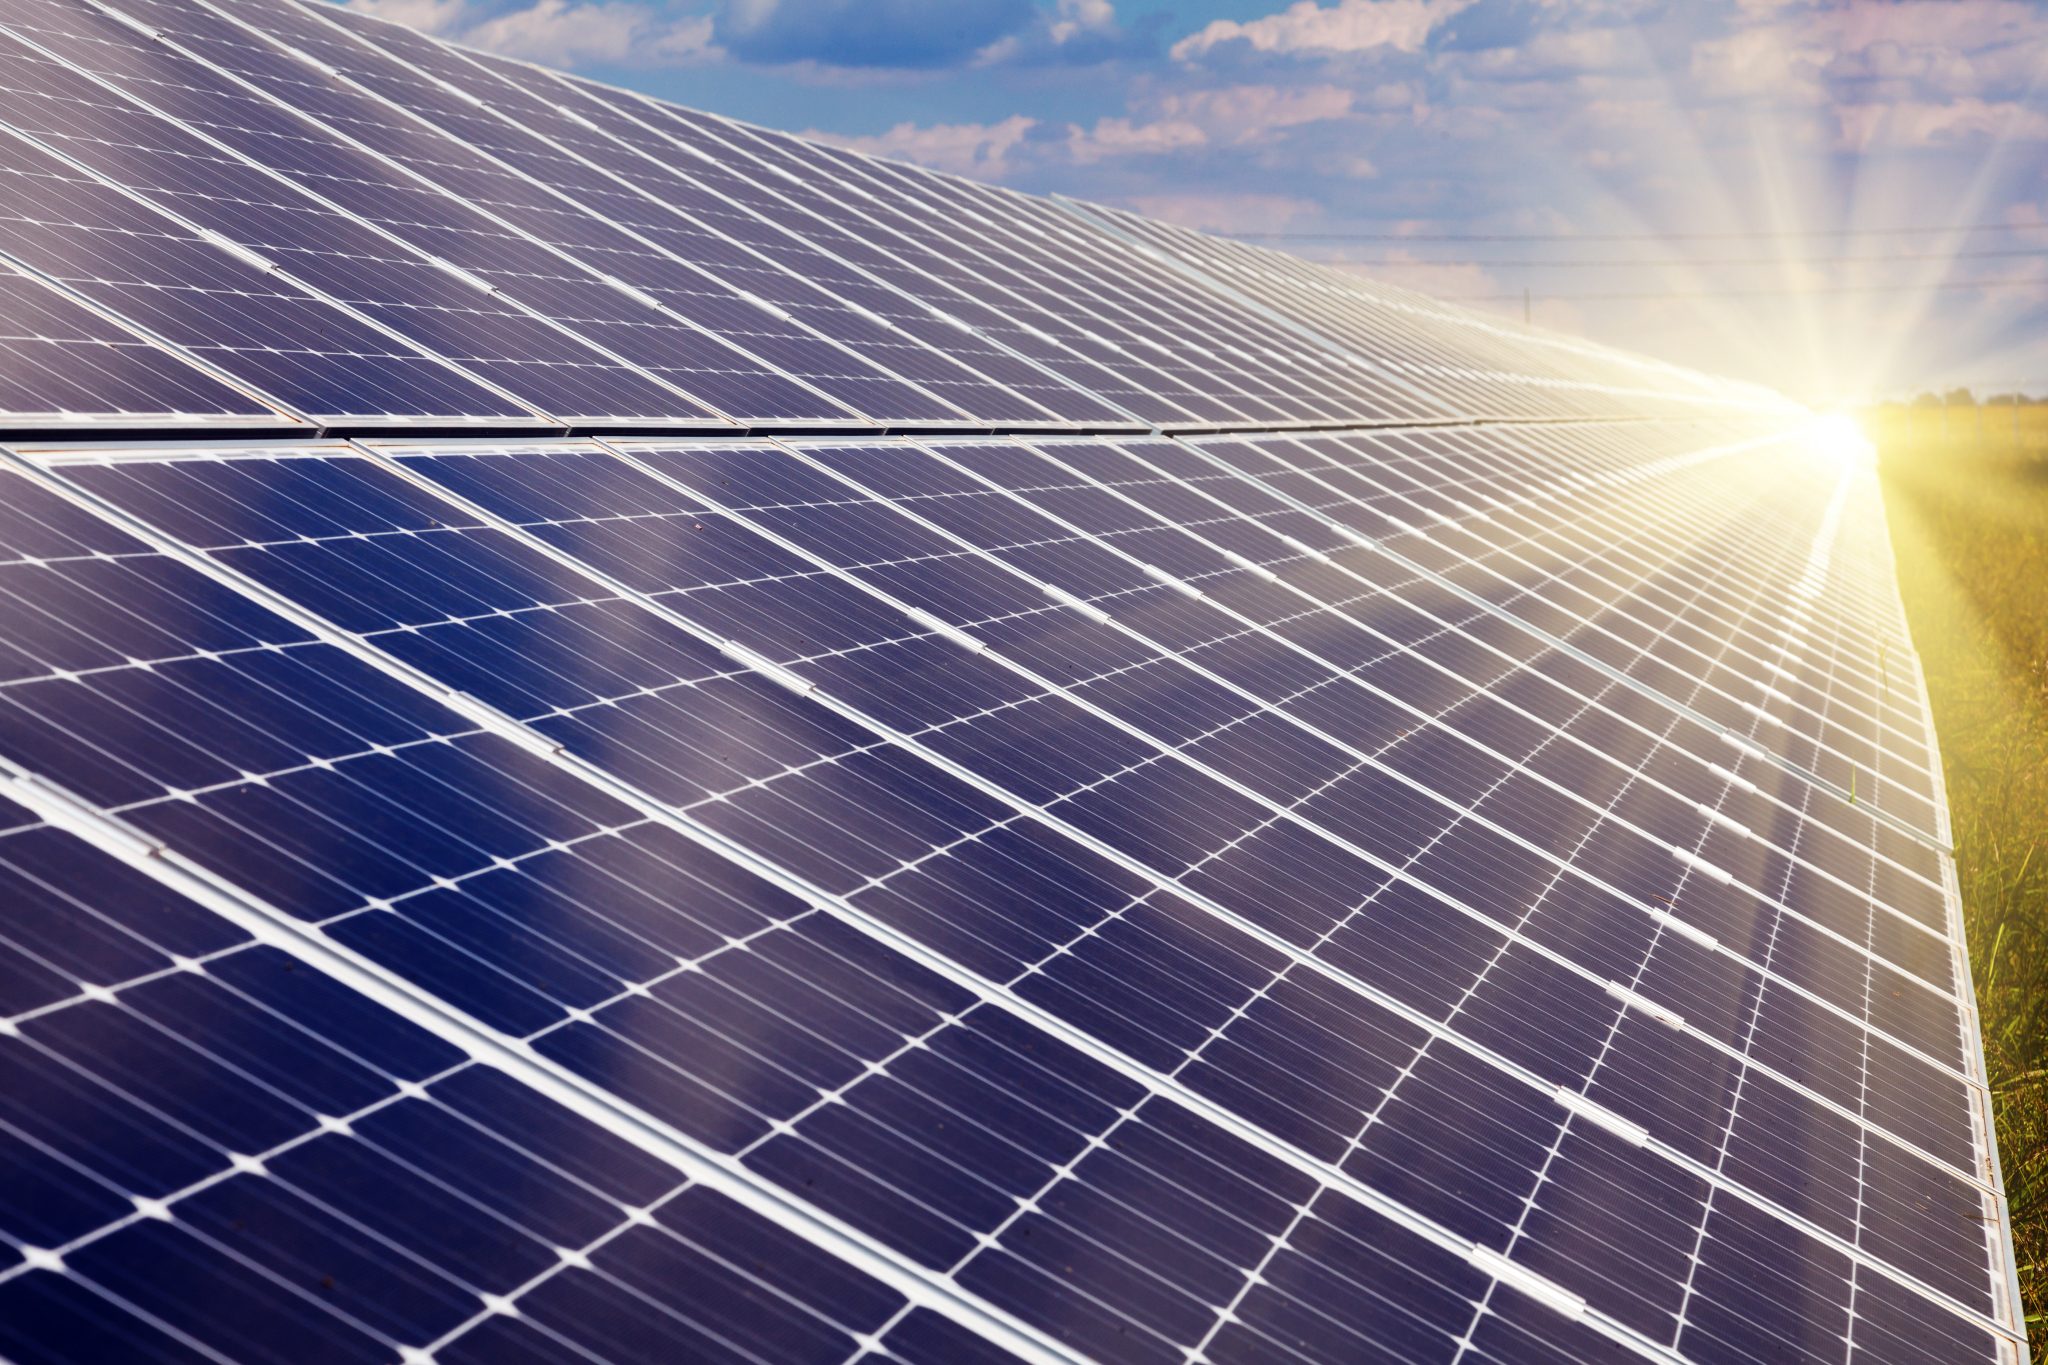 Equipamentos de energia solar têm alíquota de importação zerada